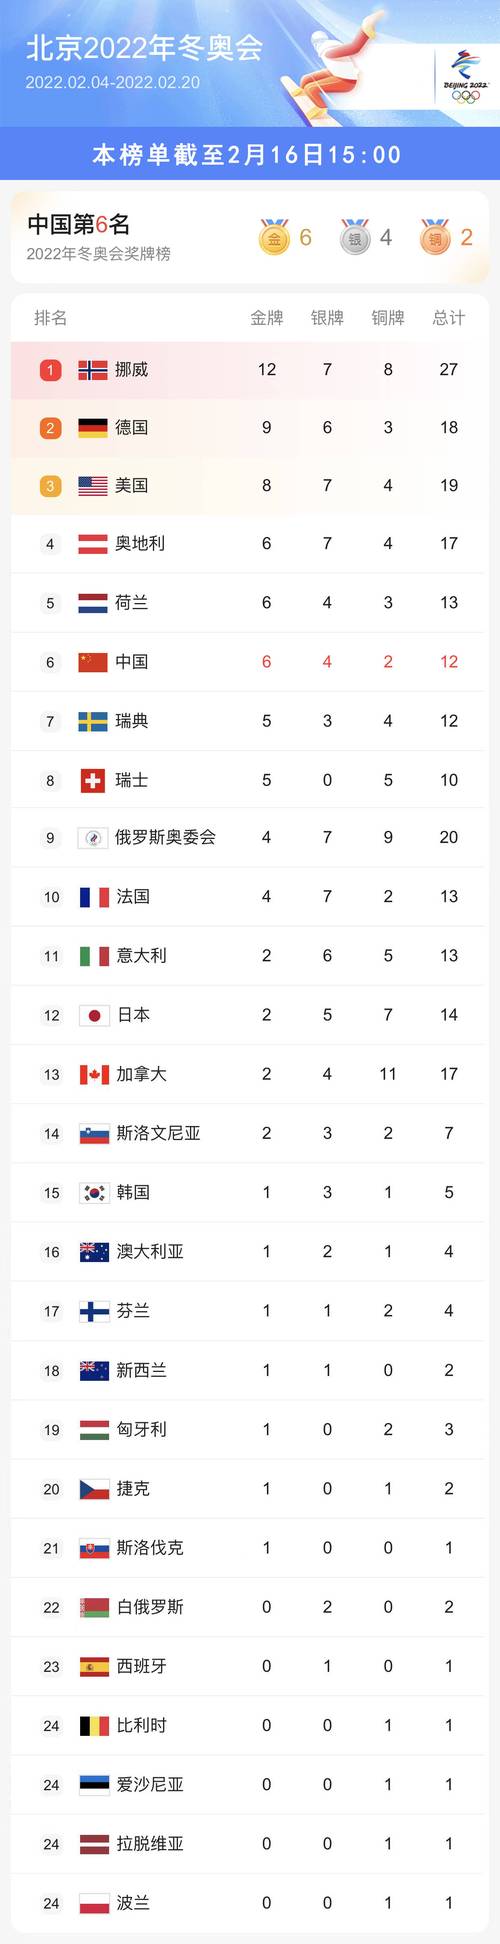 2022年冬奥会奖牌排名第几